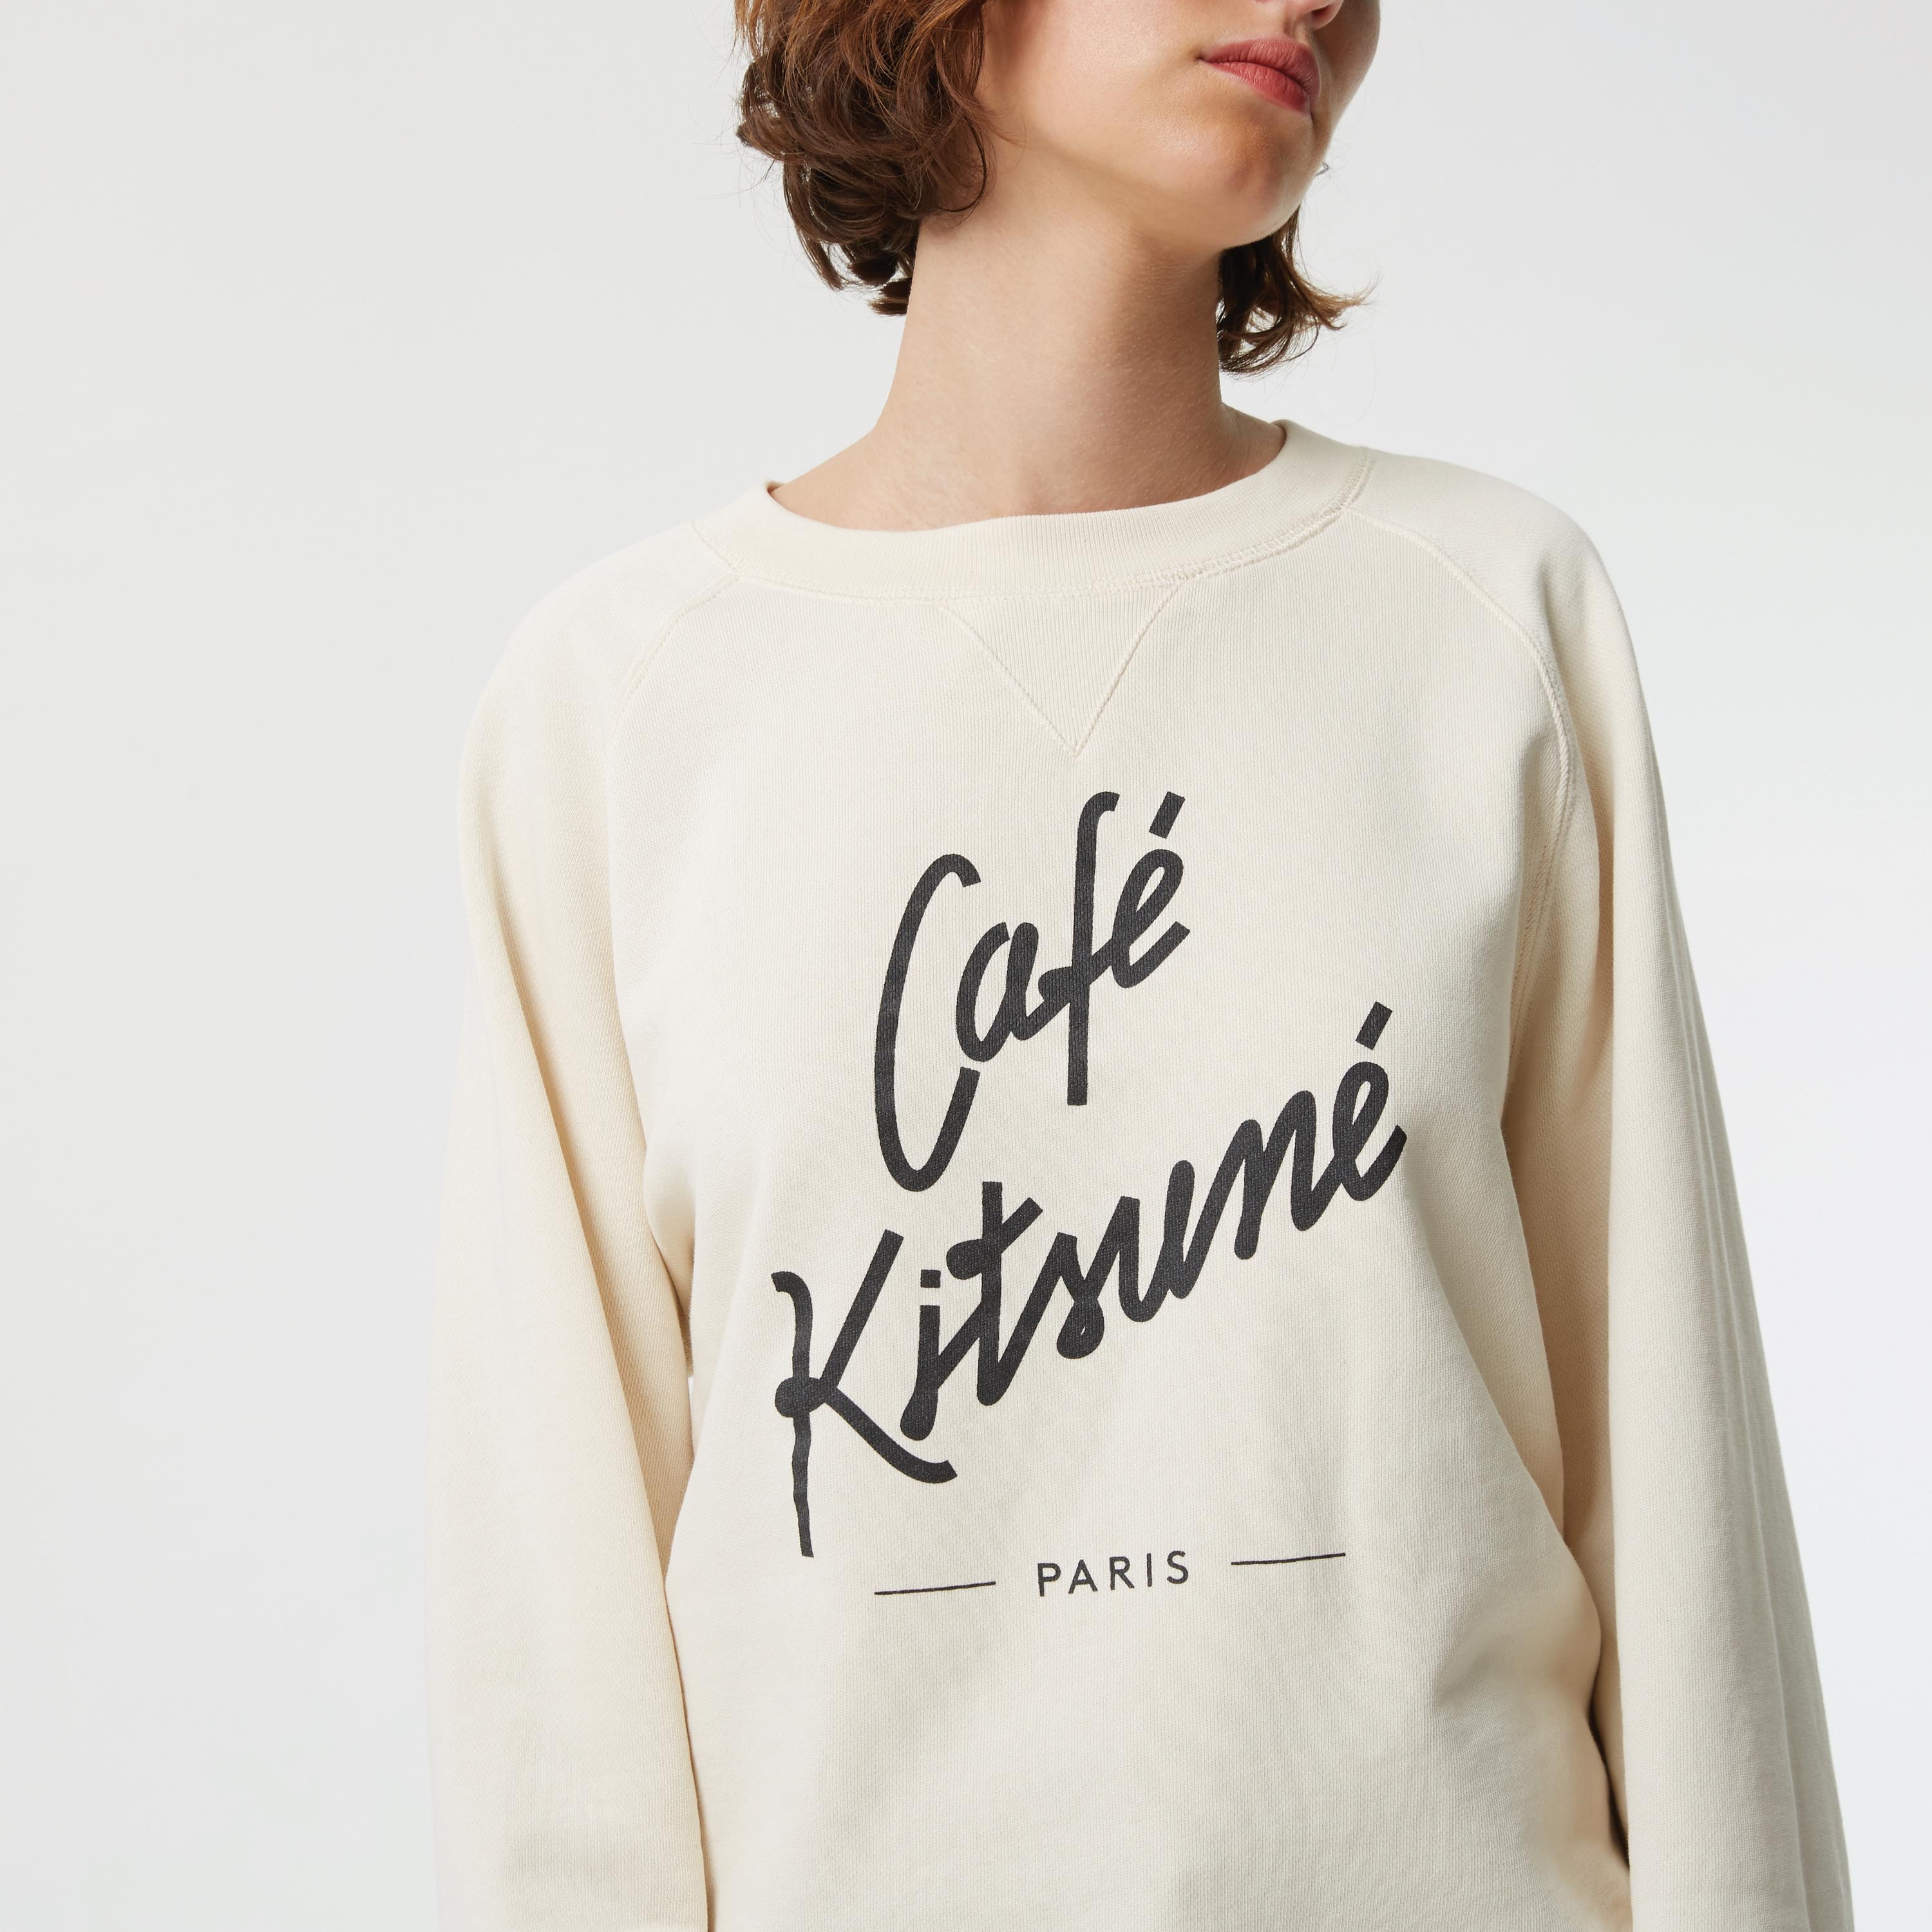 Café Kitsuné 「THE CAFÉ KITSUNÉ COLLECTION」周邊系列上架